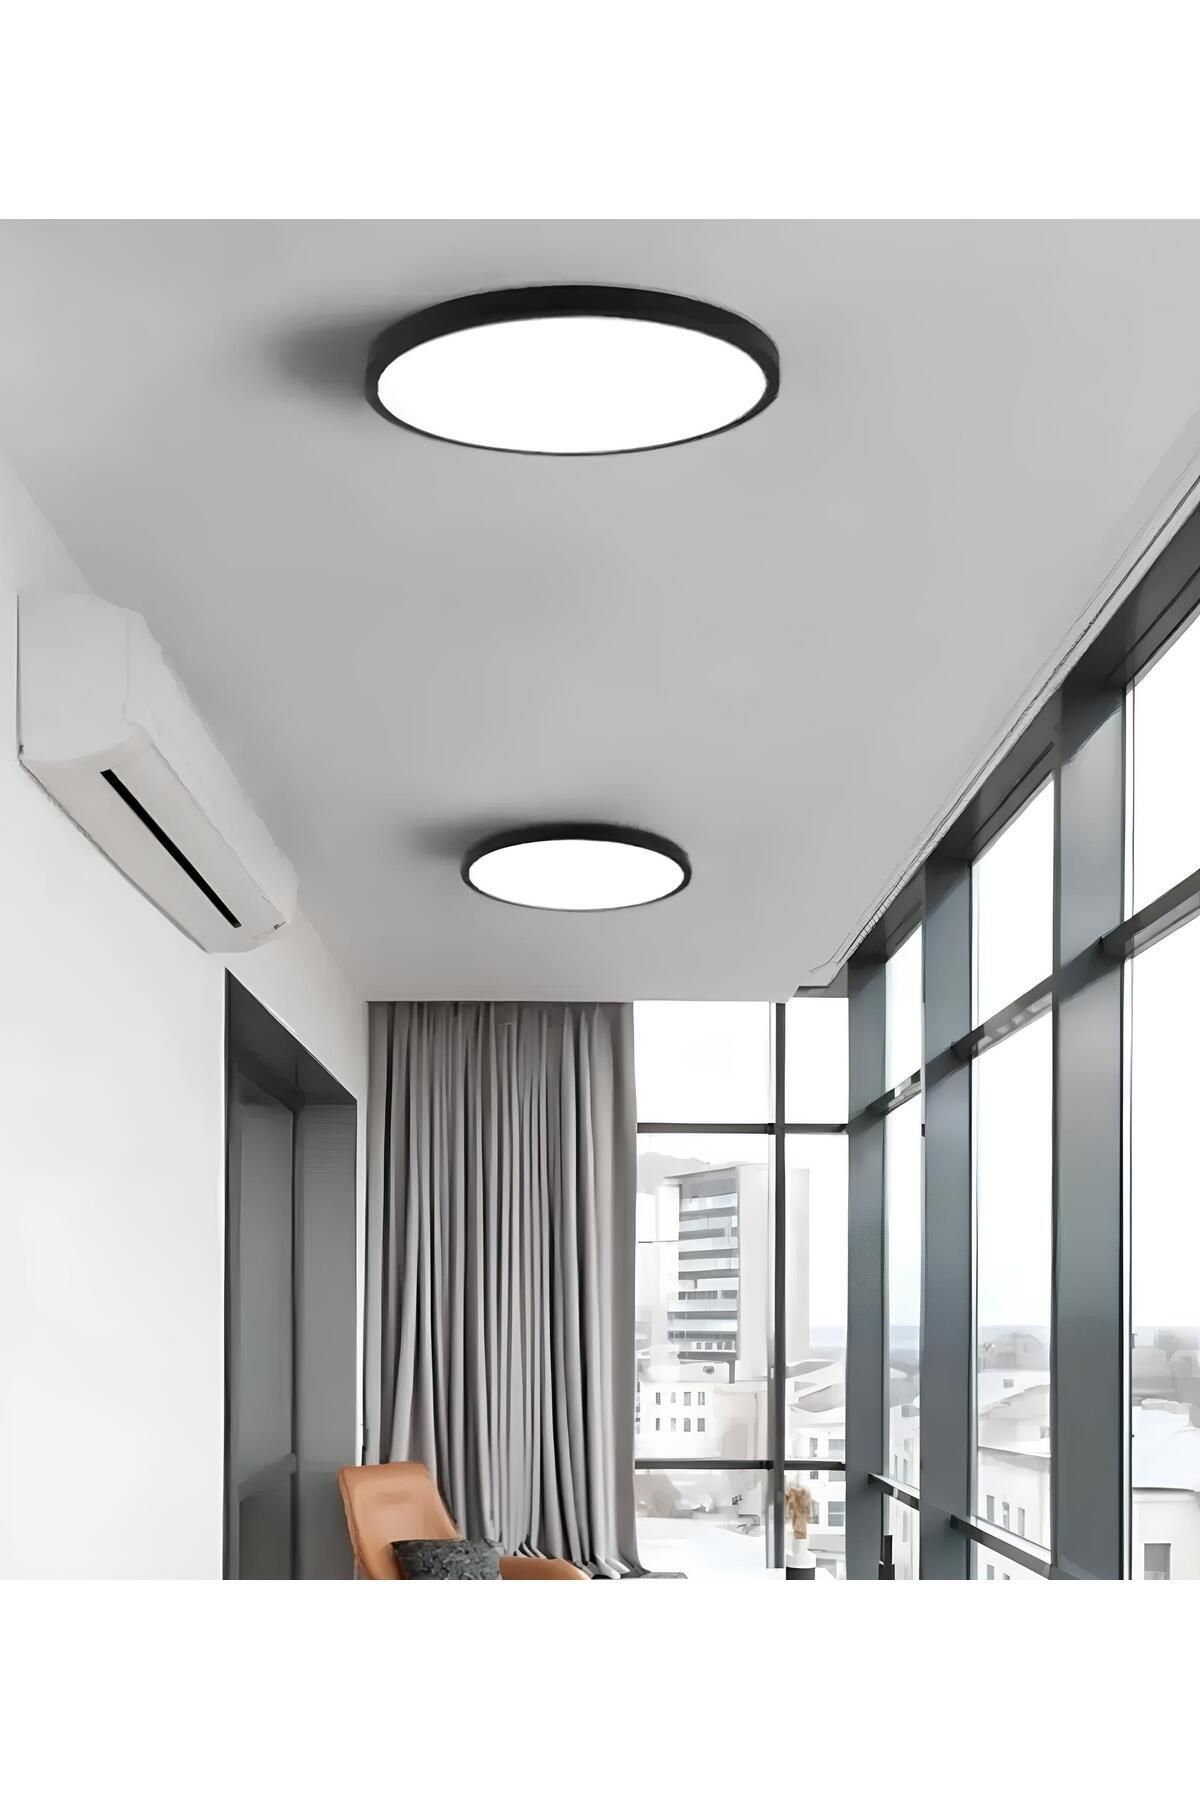 burenze Modern Tavana Sıfır Plafonyer Panel Led Avize Gün Işığı Sıcak Beyaz Led Işık Siyah Metal Kasa